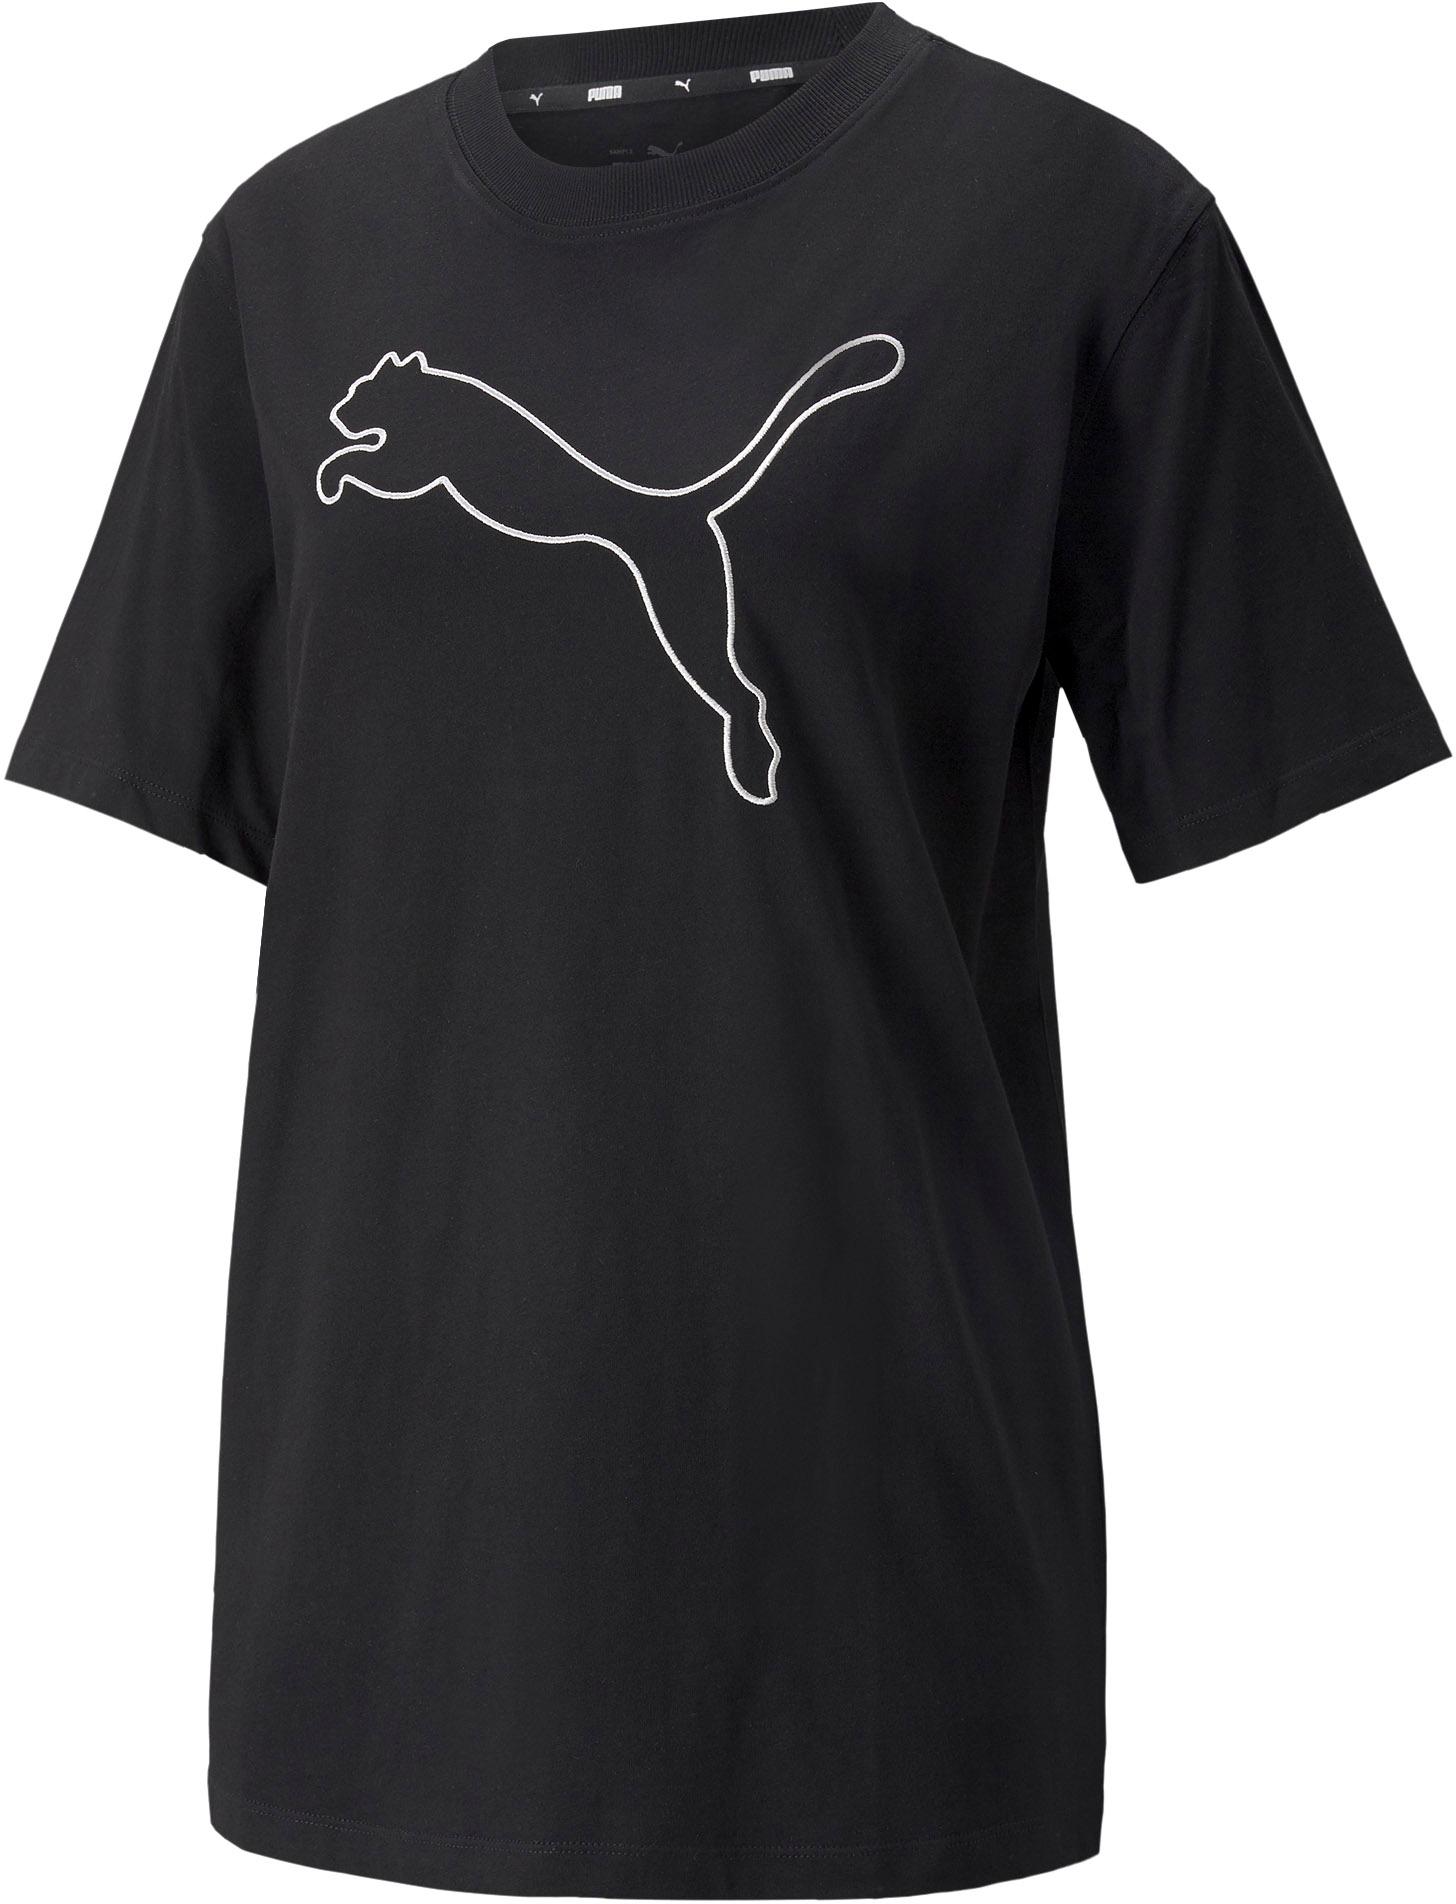 PUMA HER Shop Damen kaufen T-Shirt SportScheck puma von im black Online